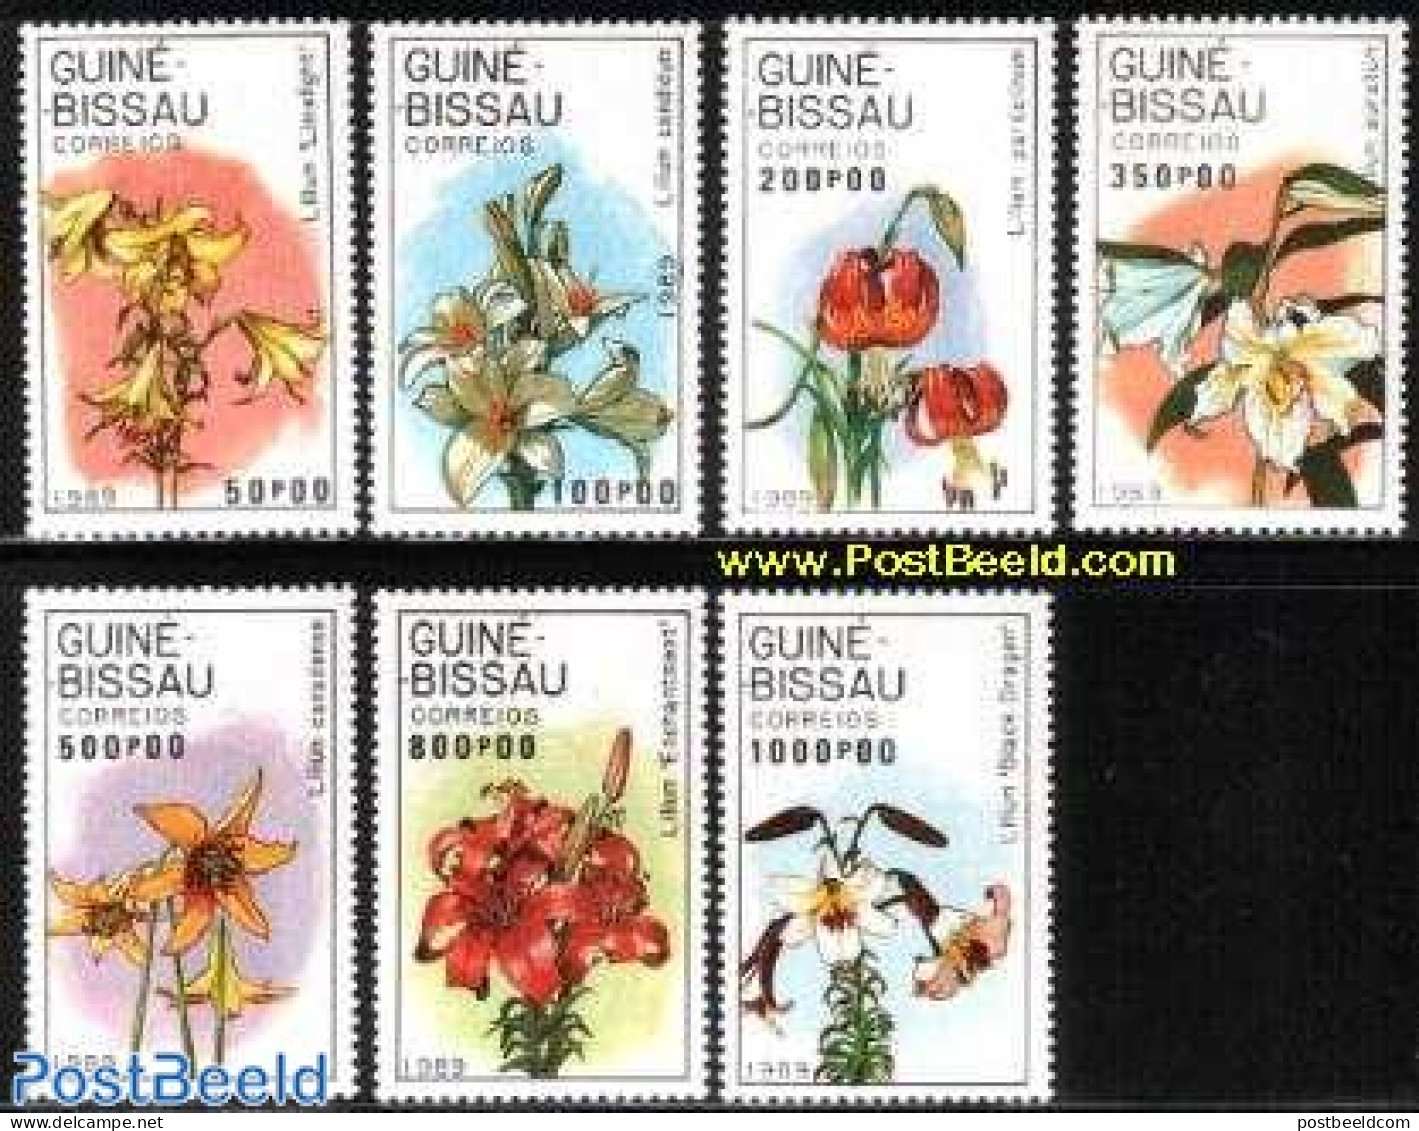 Guinea Bissau 1989 Lilies 7v, Mint NH, Nature - Flowers & Plants - Guinea-Bissau